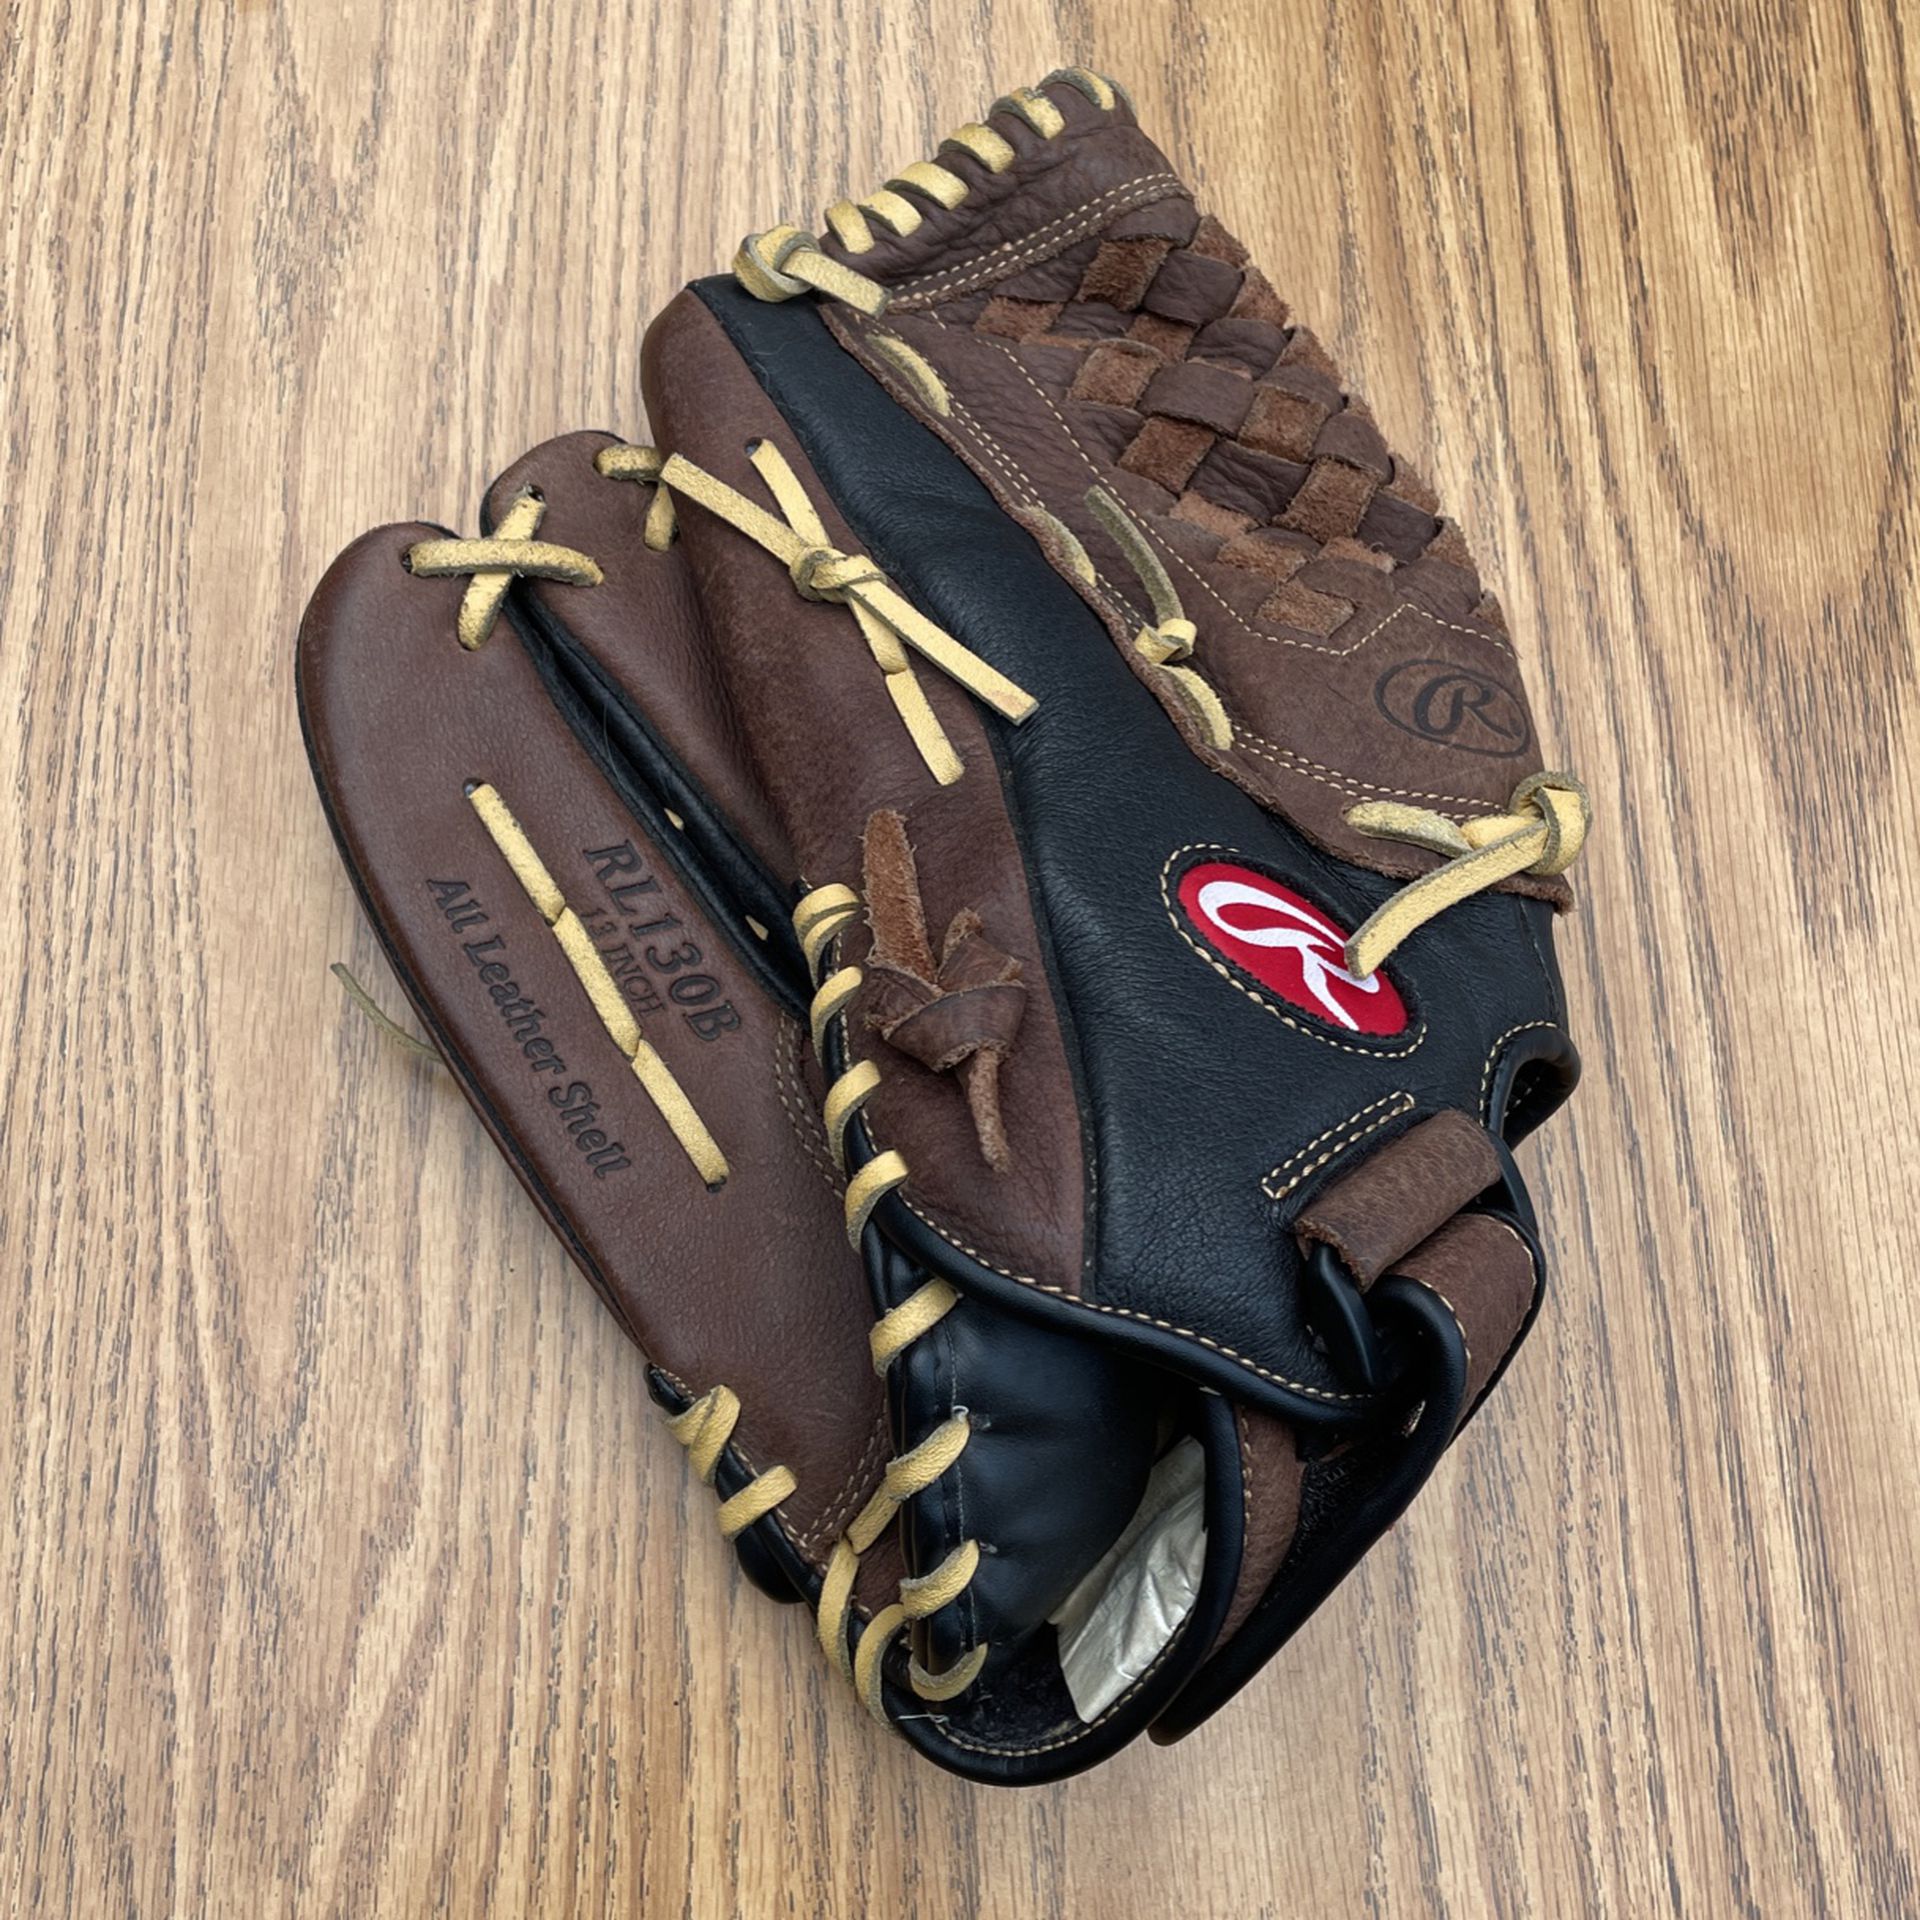 Rawlings 13 Inch Baseball Glove 